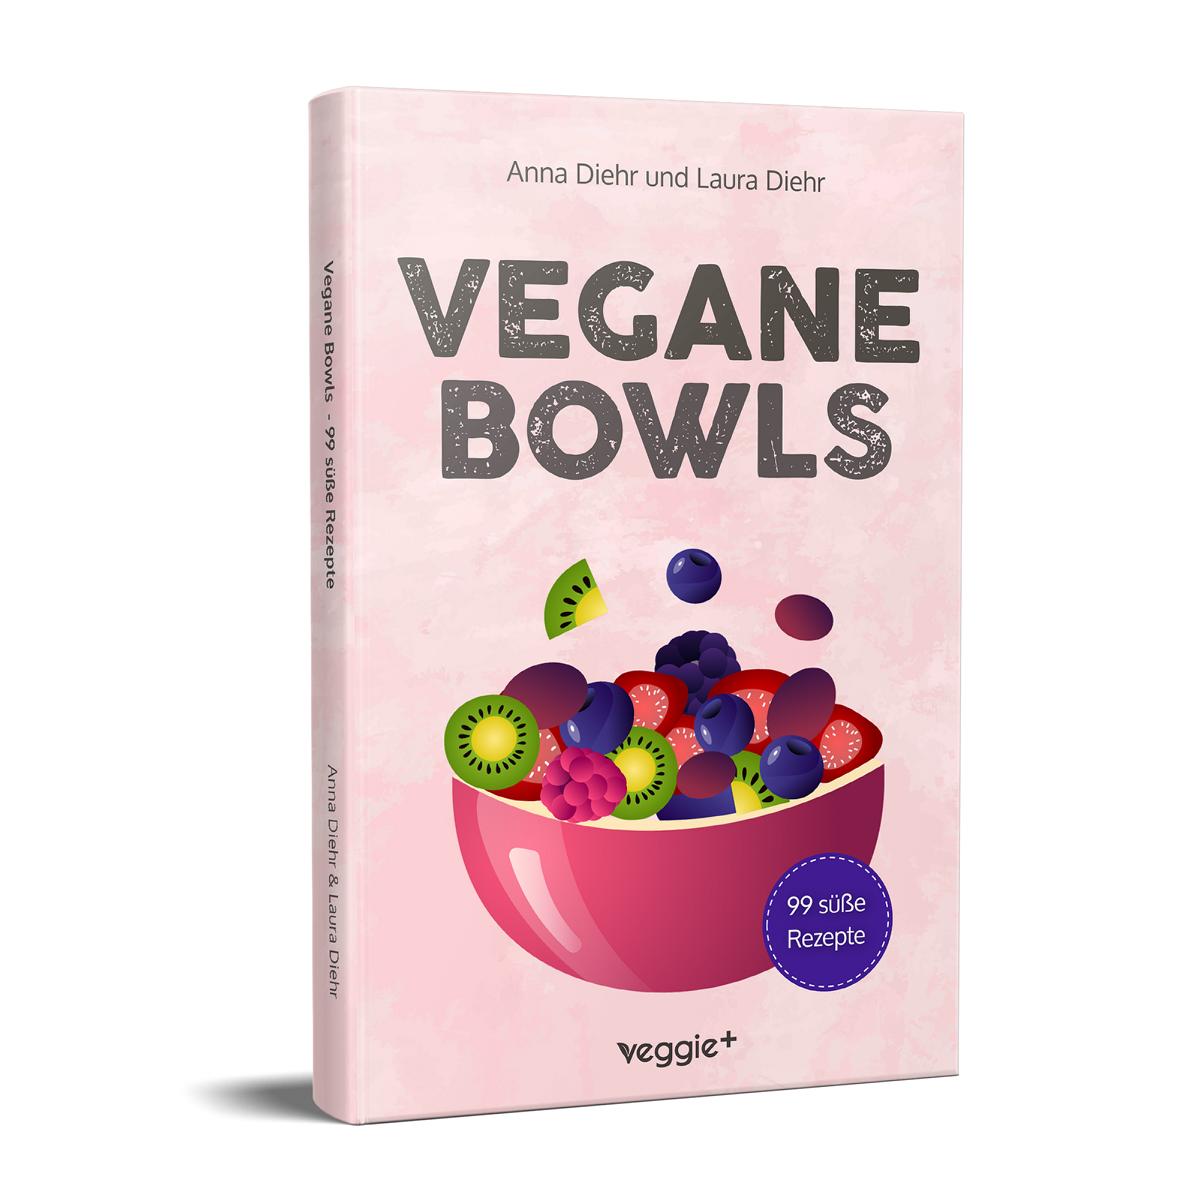 Vegane Bowls – 99 süße Rezepte: Das große vegane Kochbuch mit den besten Bowl-Rezepten für süße Gerichte und eine gesunde Ernährung von Anna Diehr und Laura Diehr im veggie + verlag